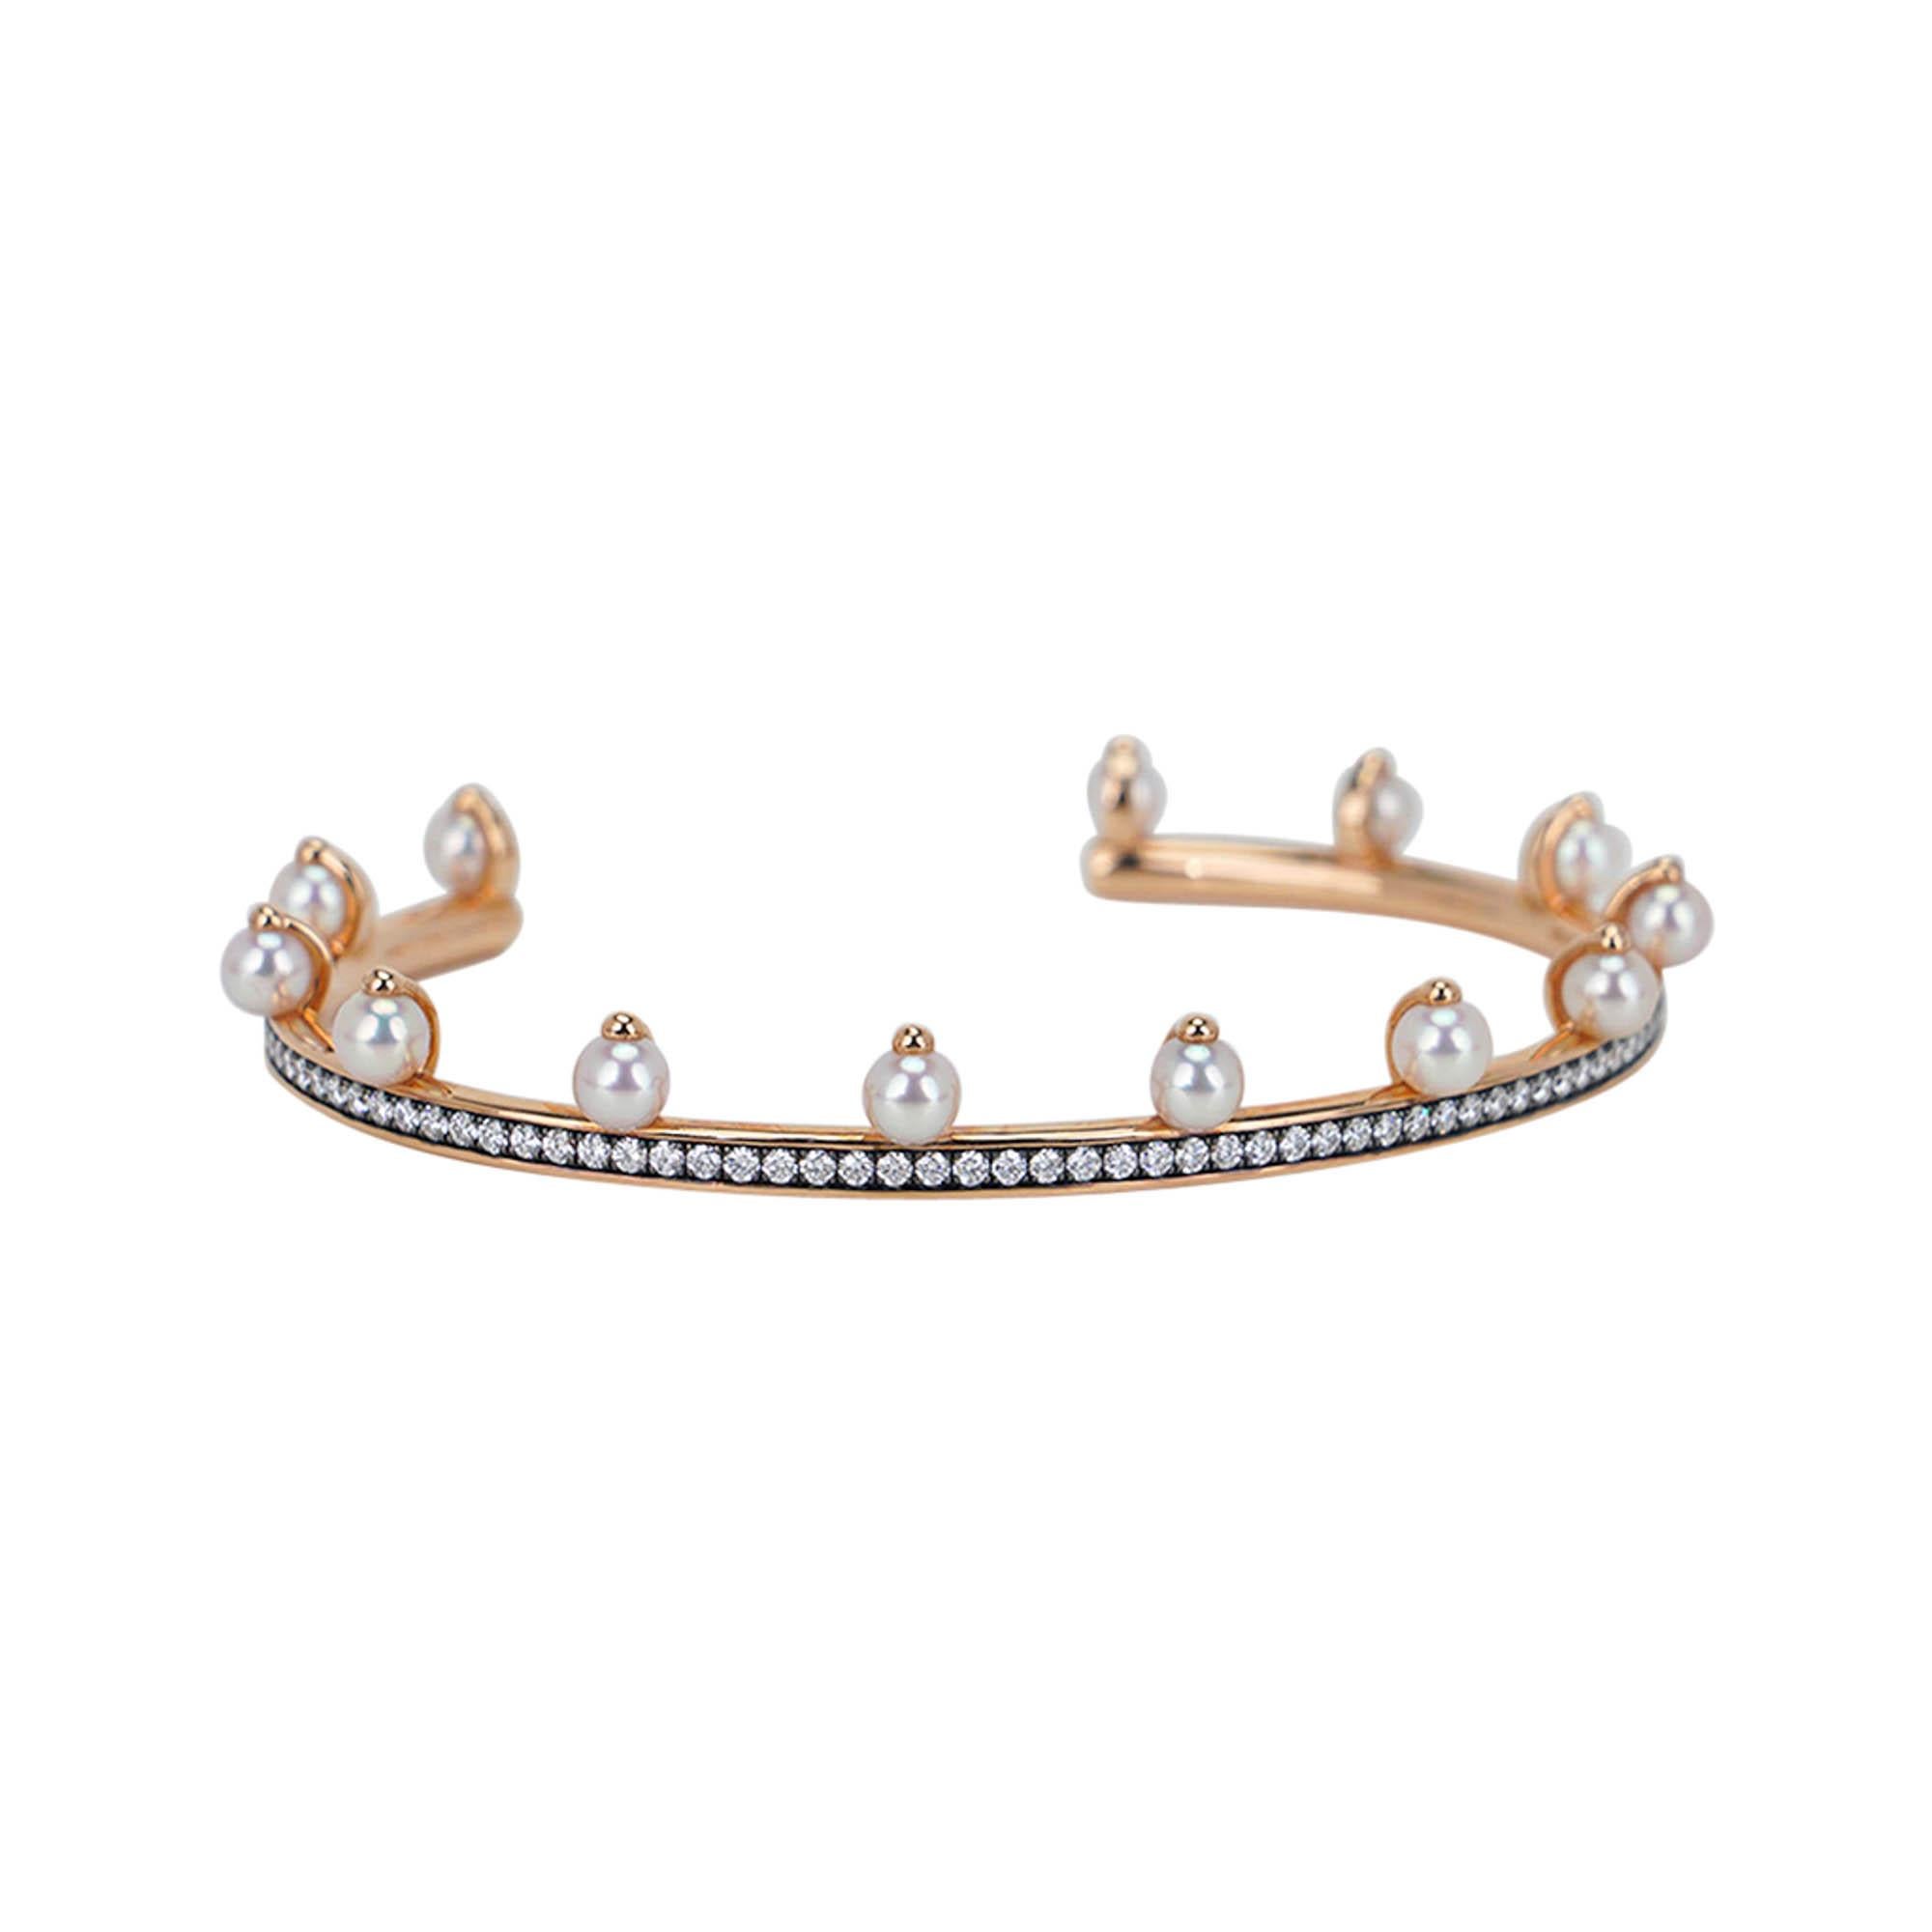 Mightychic propose un bracelet Hermes Chandra Jonc en édition limitée.
Ce bracelet/cravate exquis est en or rose 18 carats, serti de 93 diamants et de 13 perles.
Le poids total en carats est de 1,05.
Livré avec un coussin Hermès et une boîte